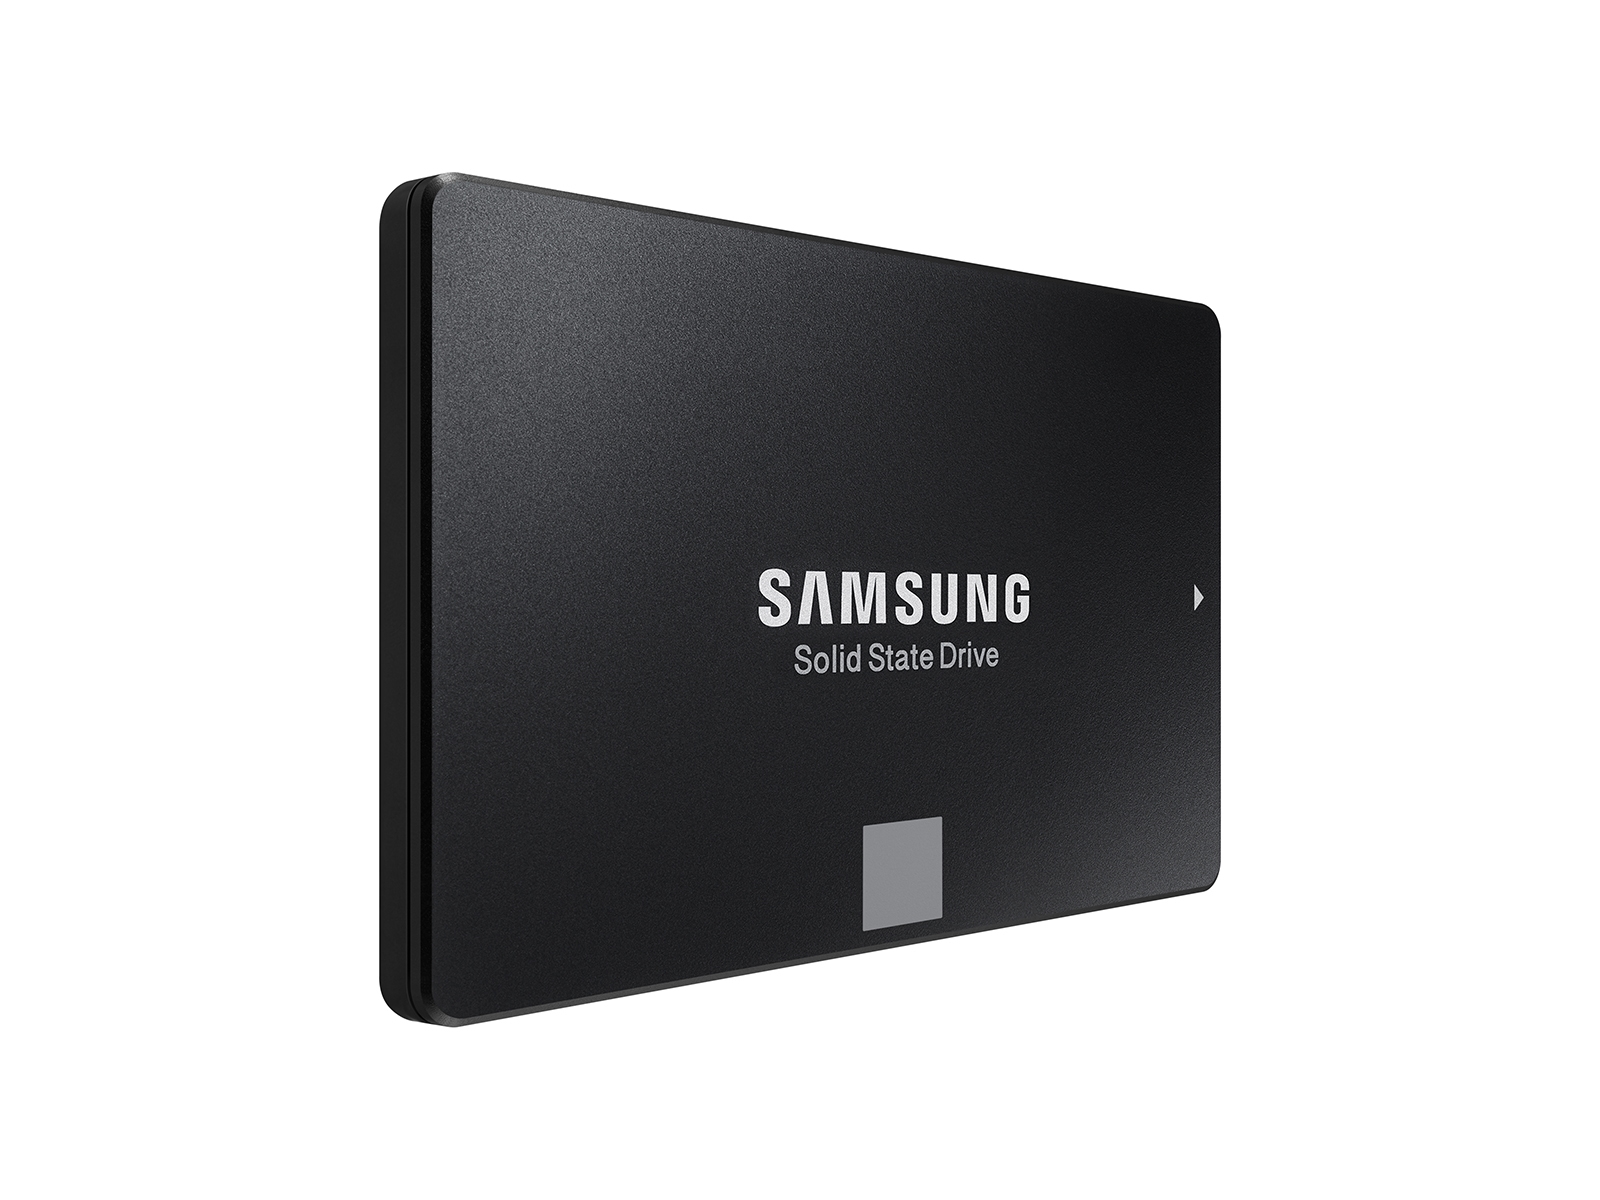 Uitreiken Beoefend Discriminatie SSD 860 EVO 2.5 inch SATA III 4TB Memory & Storage - MZ-76E4T0B/AM |  Samsung US